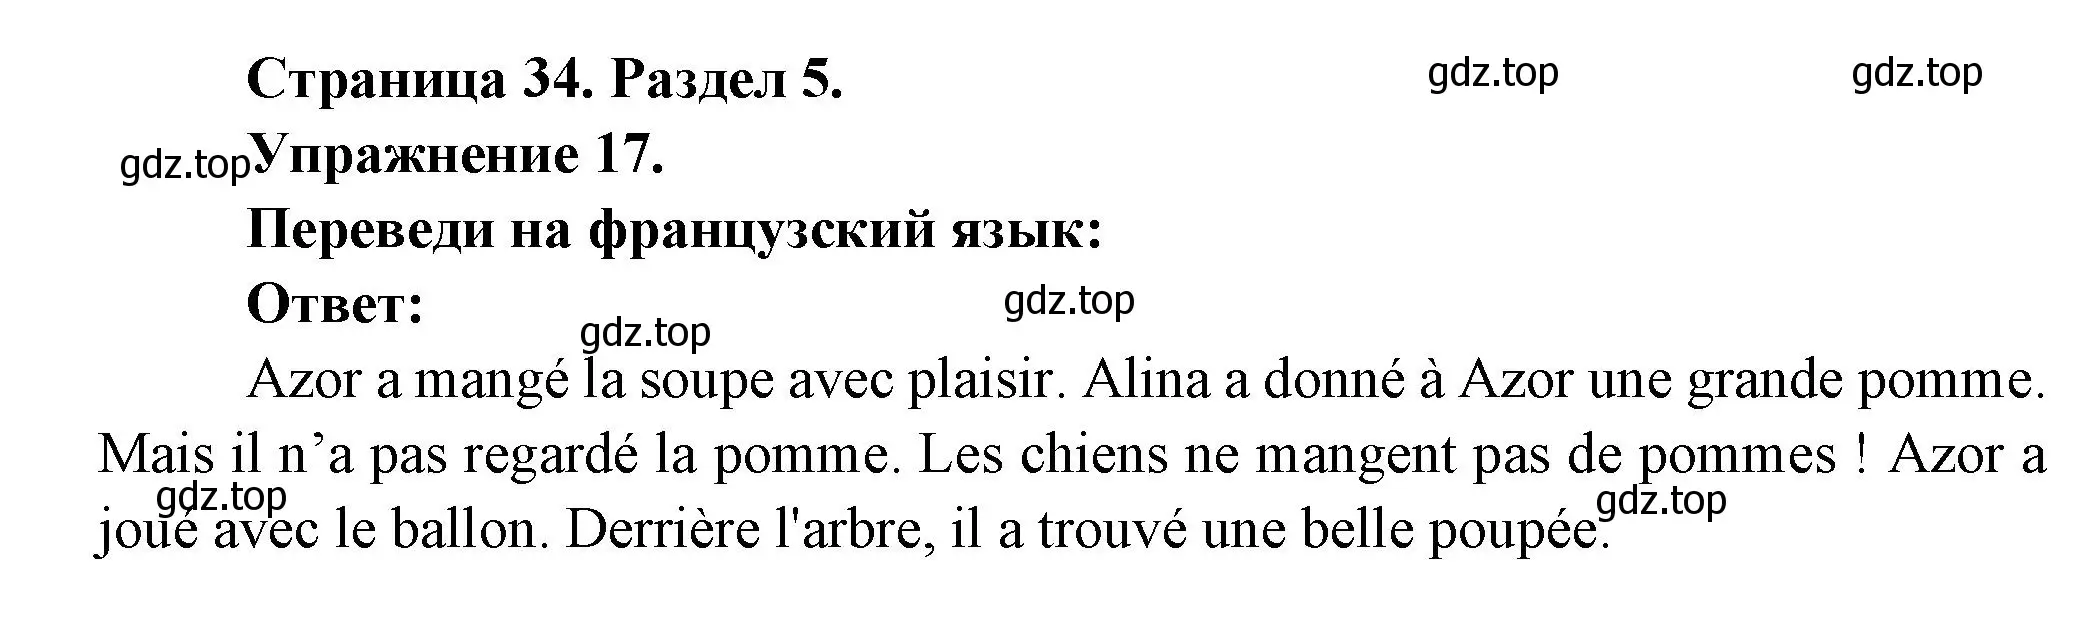 Решение номер 17 (страница 34) гдз по французскому языку 5 класс Береговская, Белосельская, учебник 2 часть